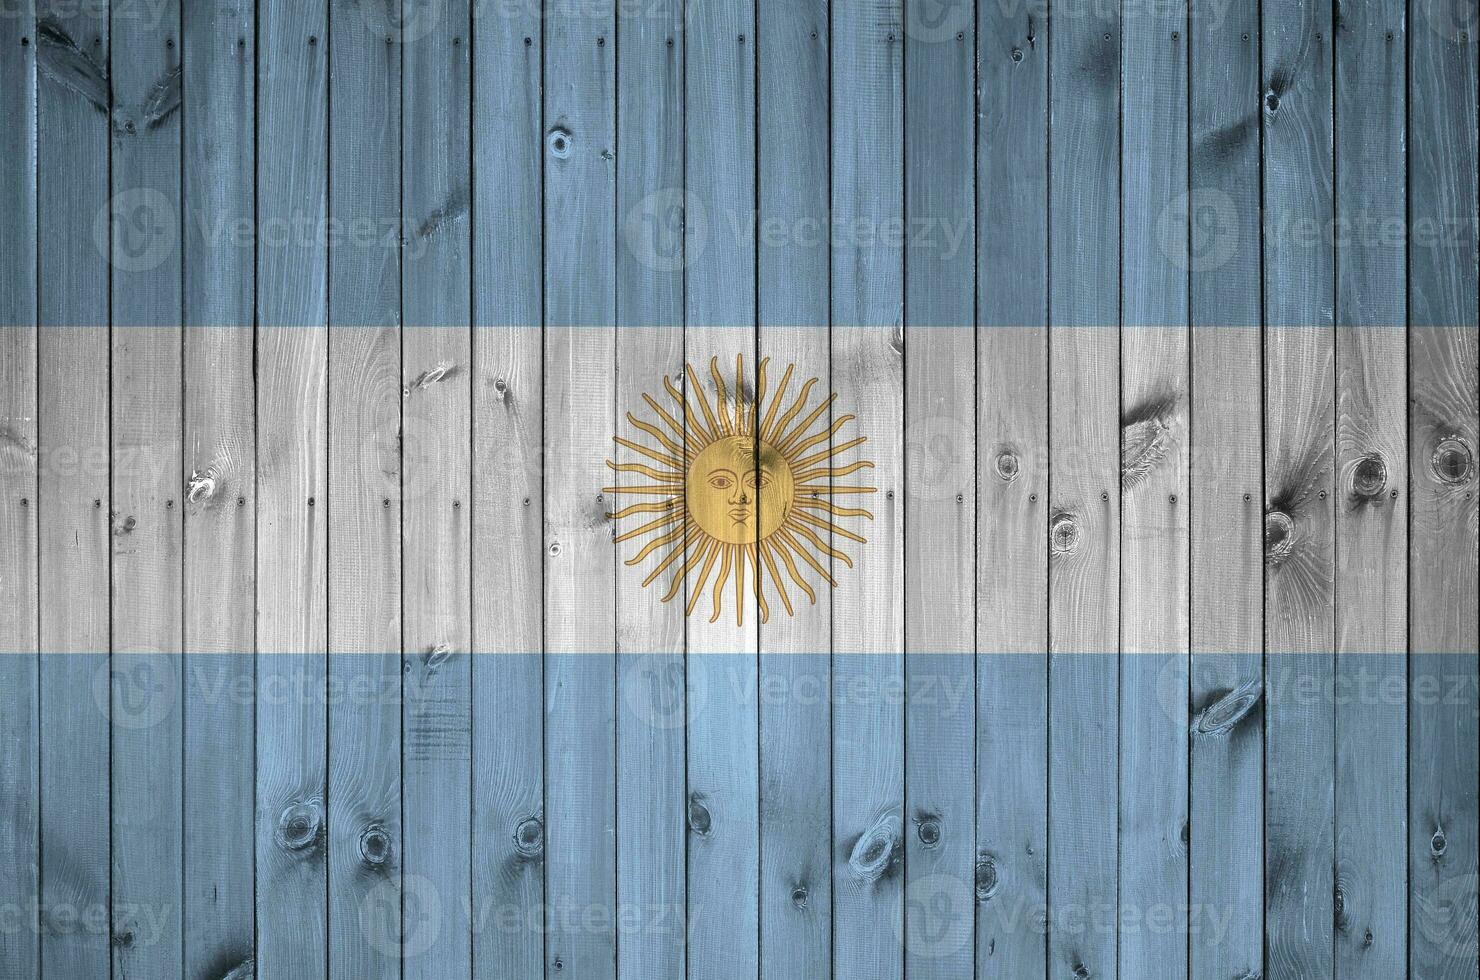 Argentinien Flagge abgebildet im hell Farbe Farben auf alt hölzern Mauer. texturiert Banner auf Rau Hintergrund foto